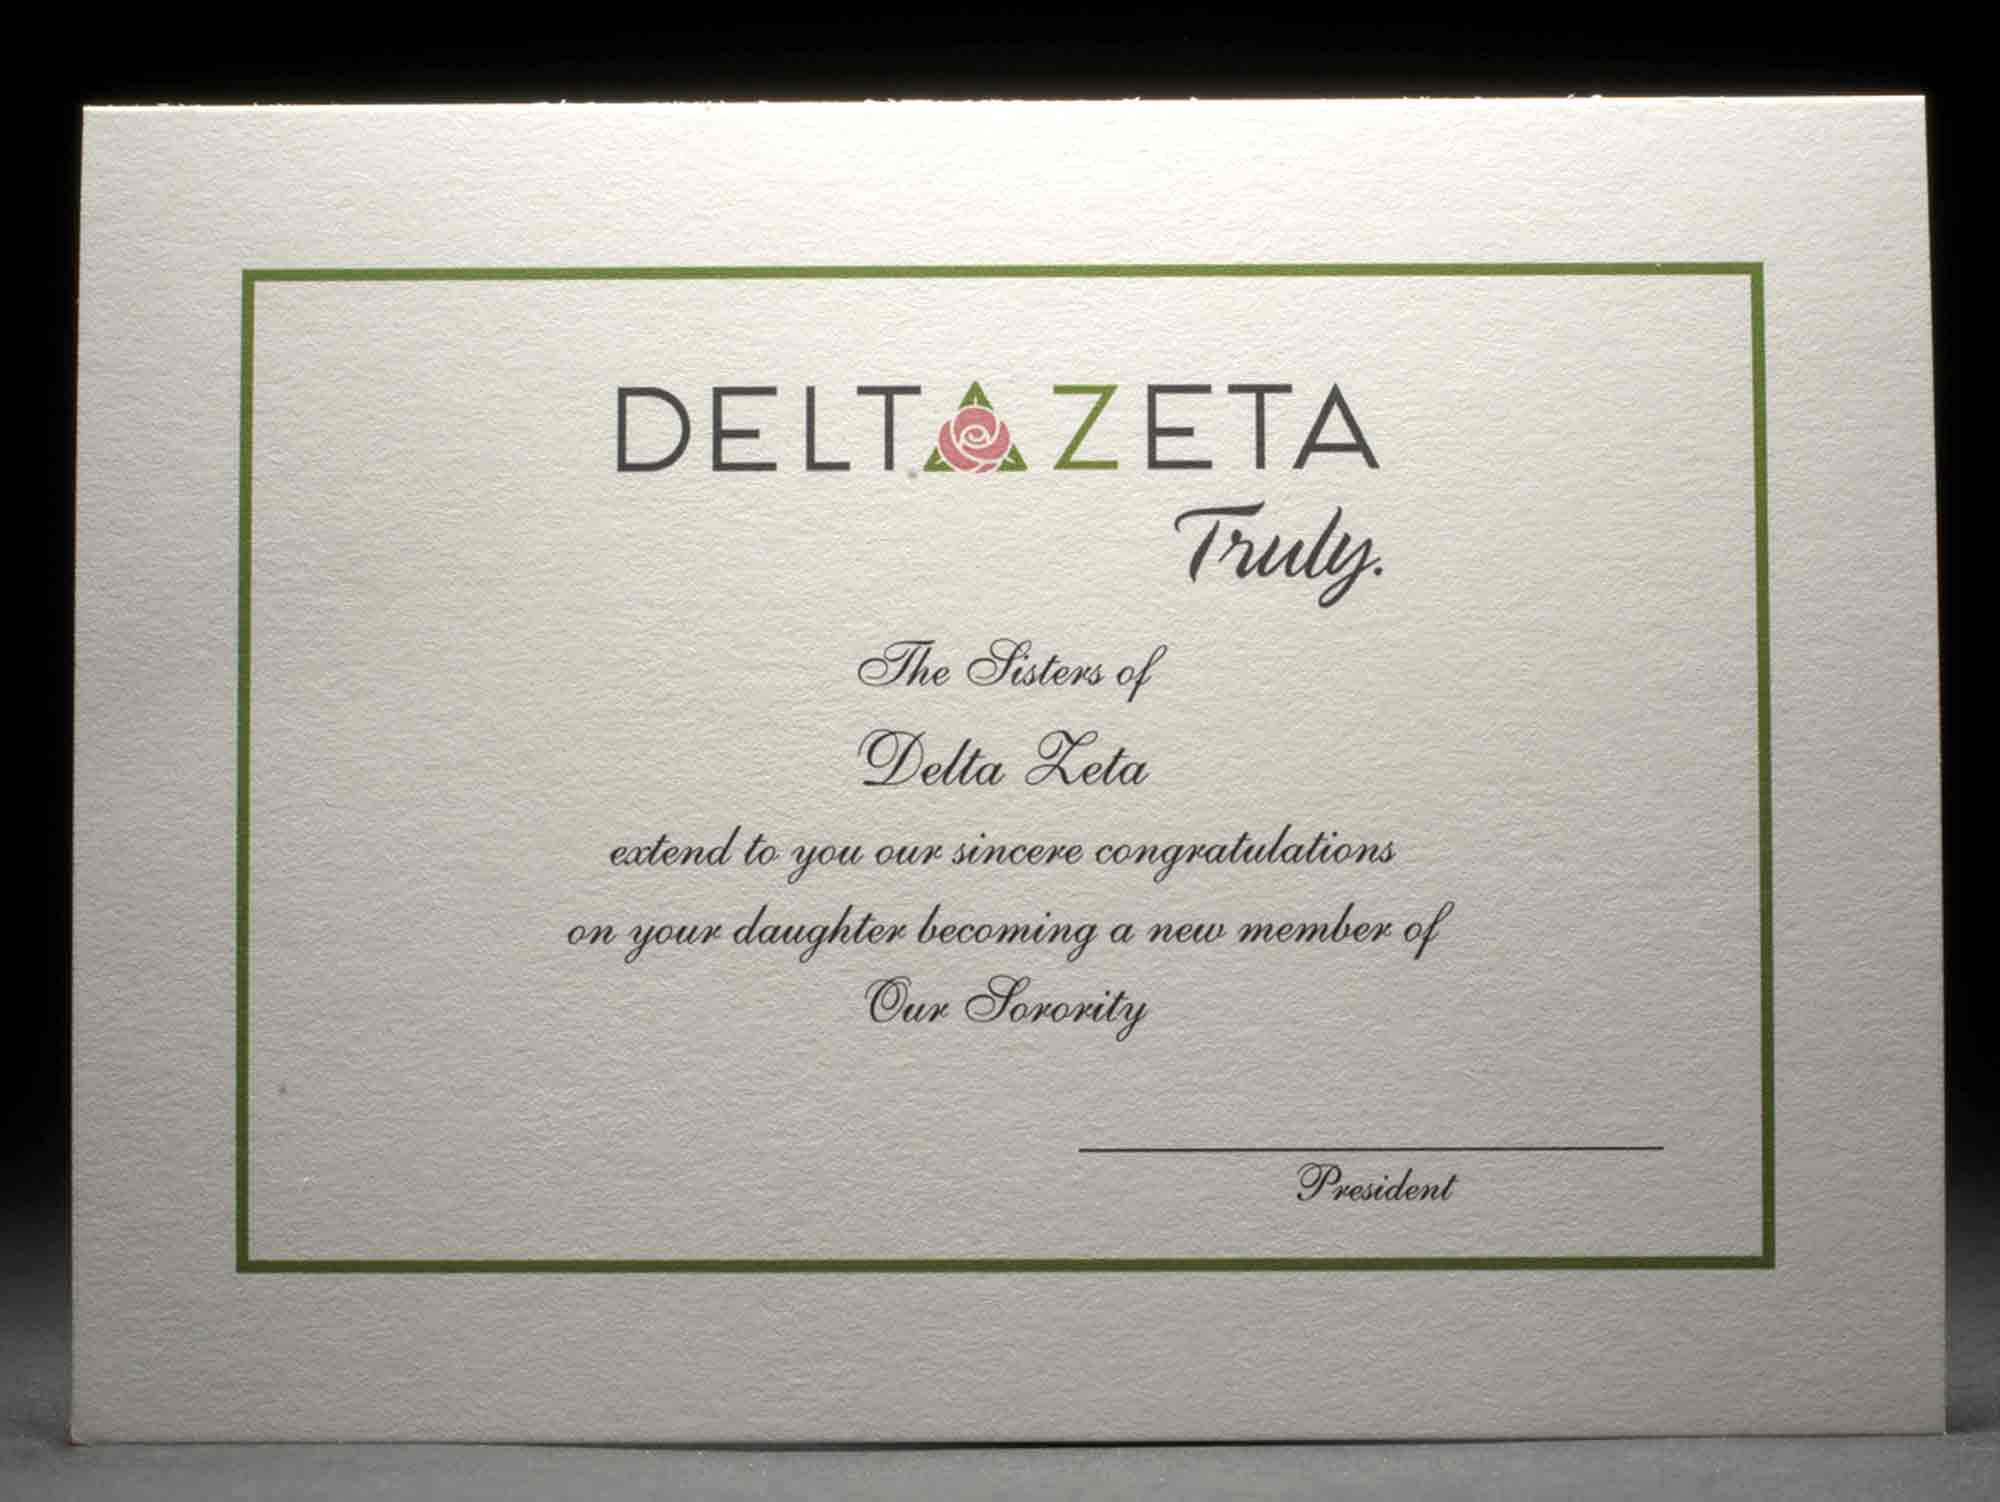 Official Parent Congratulations New Member Delta Zeta